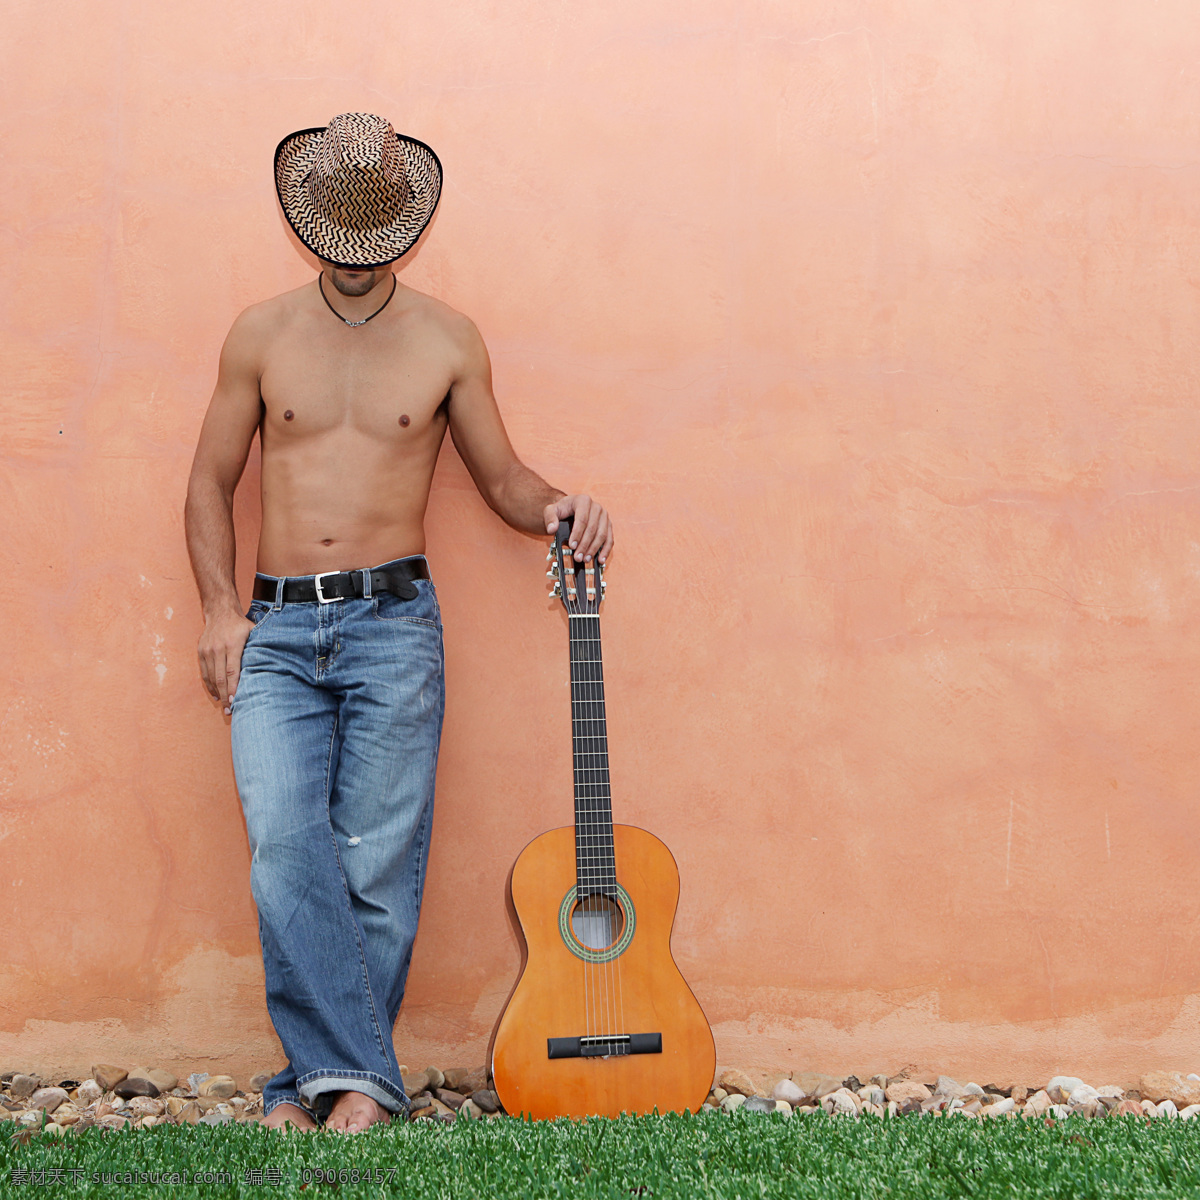 吉他 牛仔 欧美男性 外国男人 戴帽子的男人 乐器 生活人物 人物图片